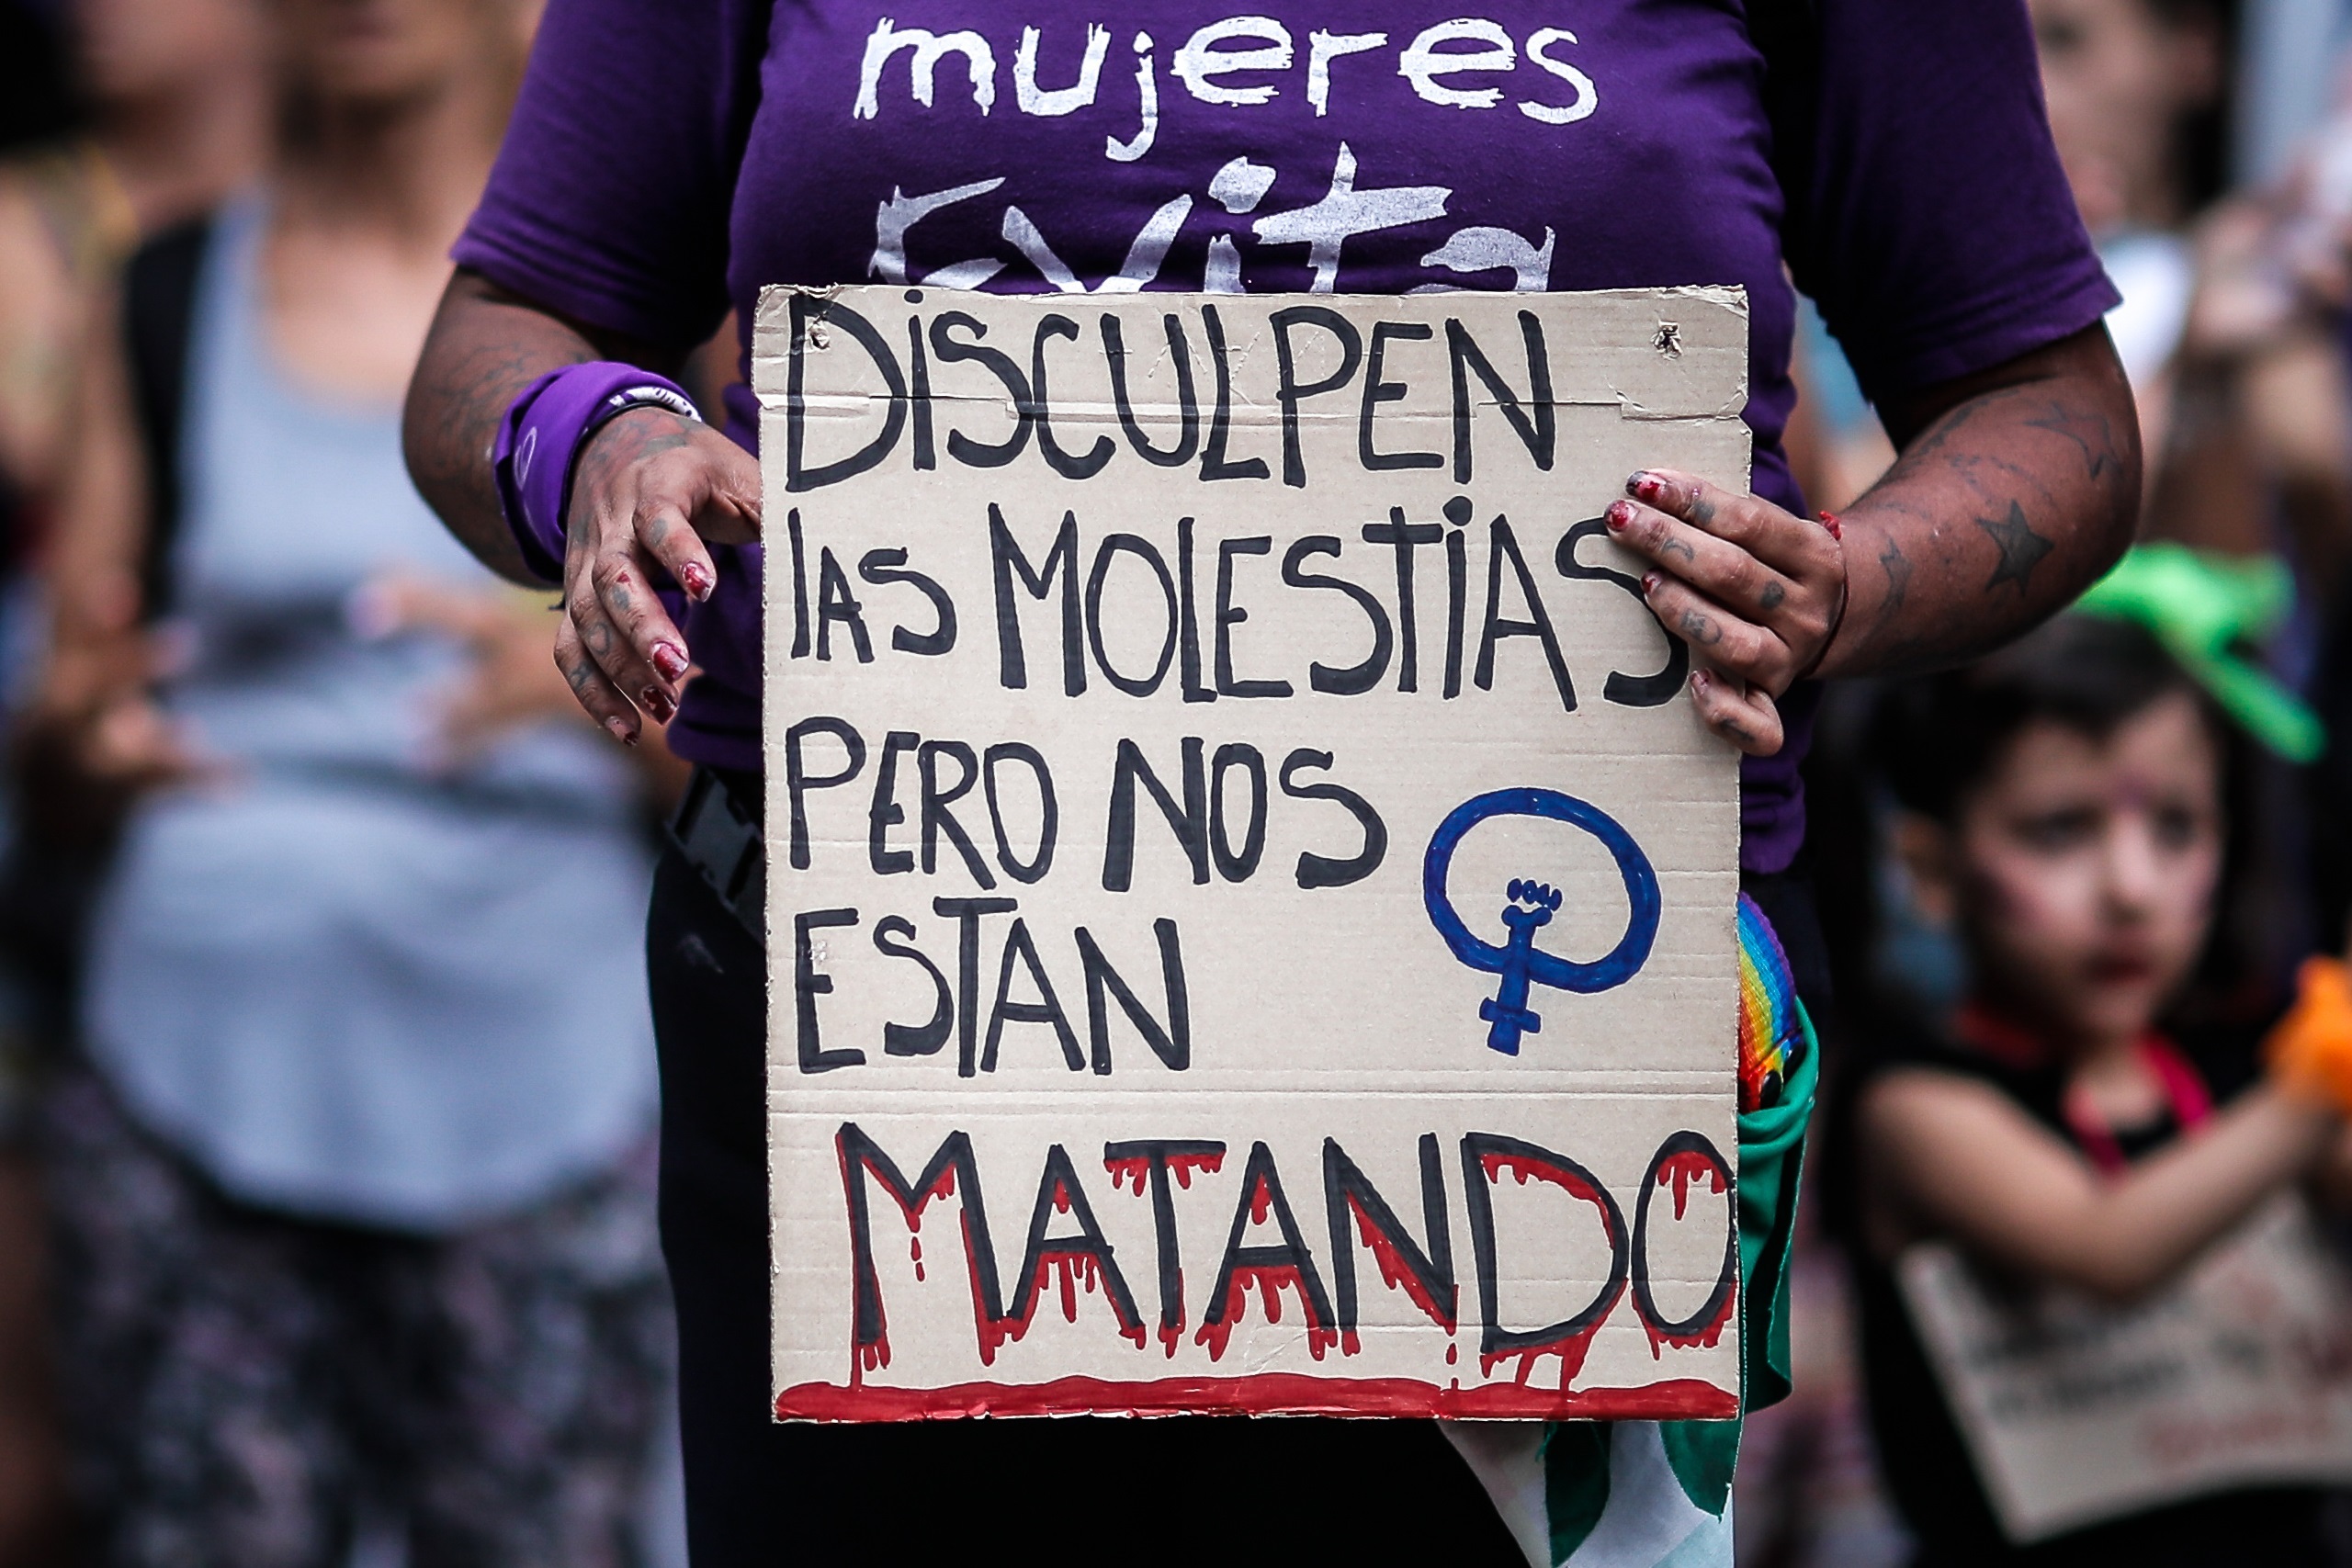 Más de 227 mujeres fueron asesinadas en Argentina por violencia machista desde que inició el 2021